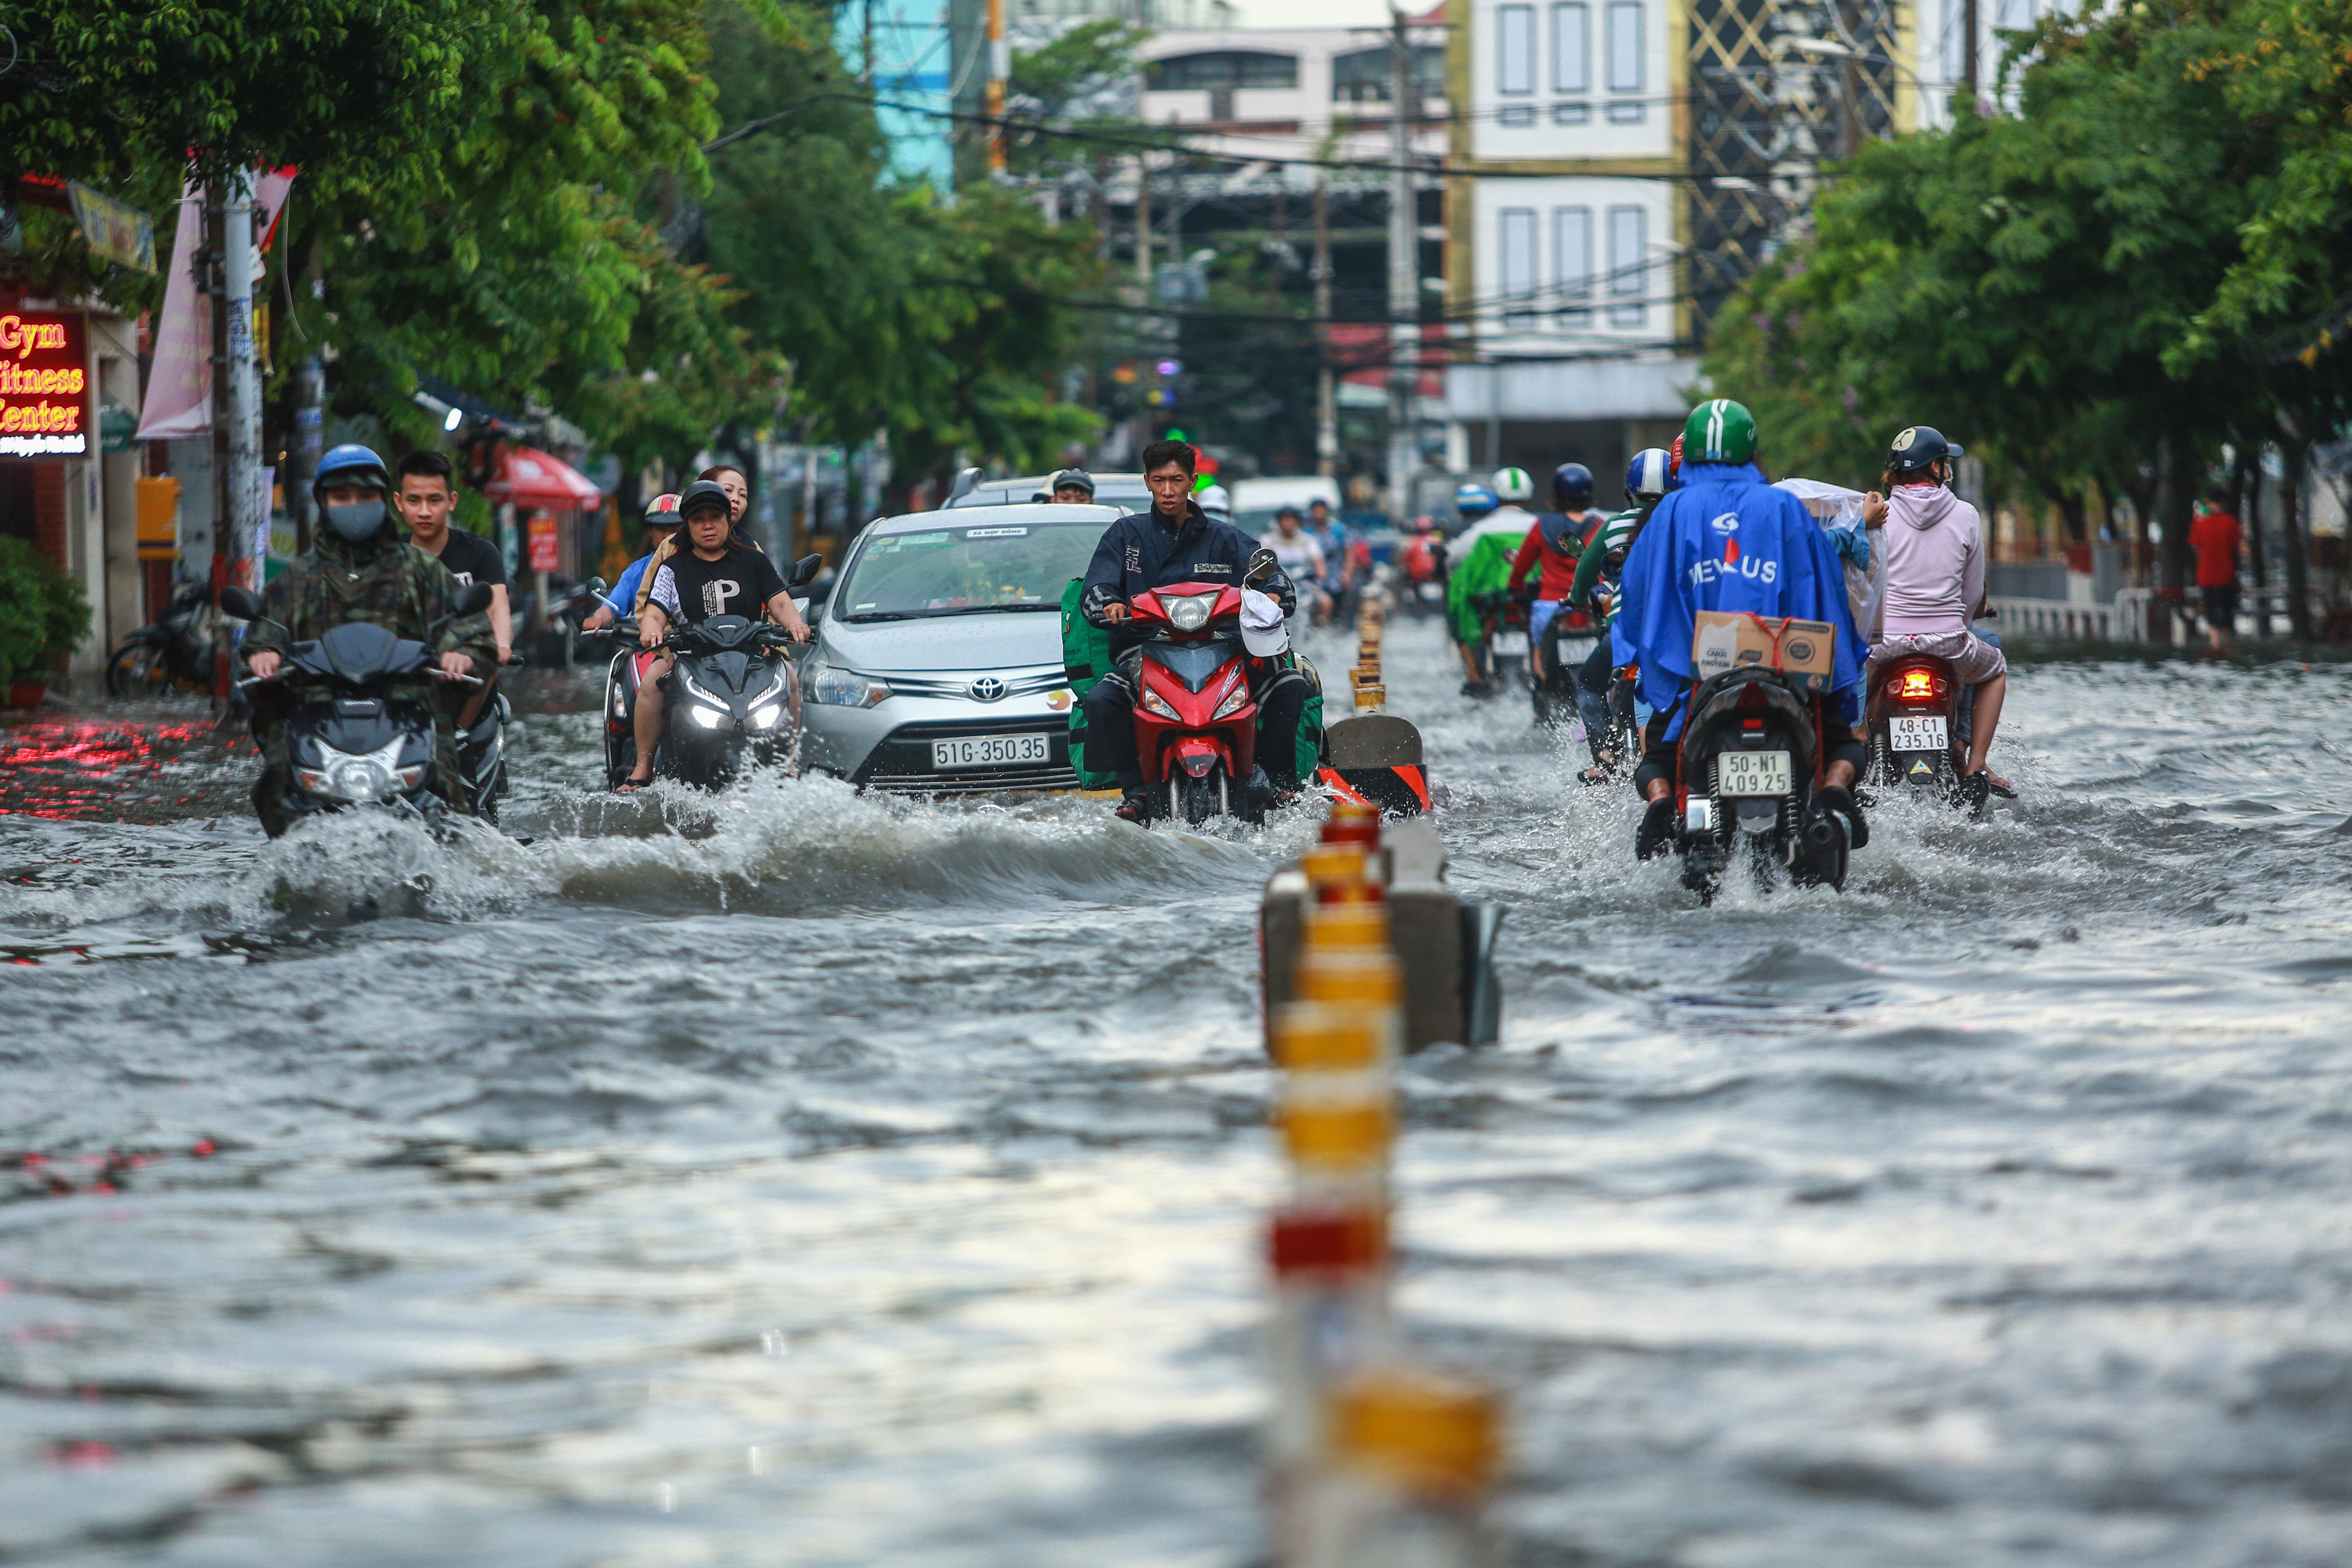 [ẢNH] Người Sài Gòn lại bì bõm trên những con đường ngập nước để về nhà sau mưa lớn - Ảnh 1.